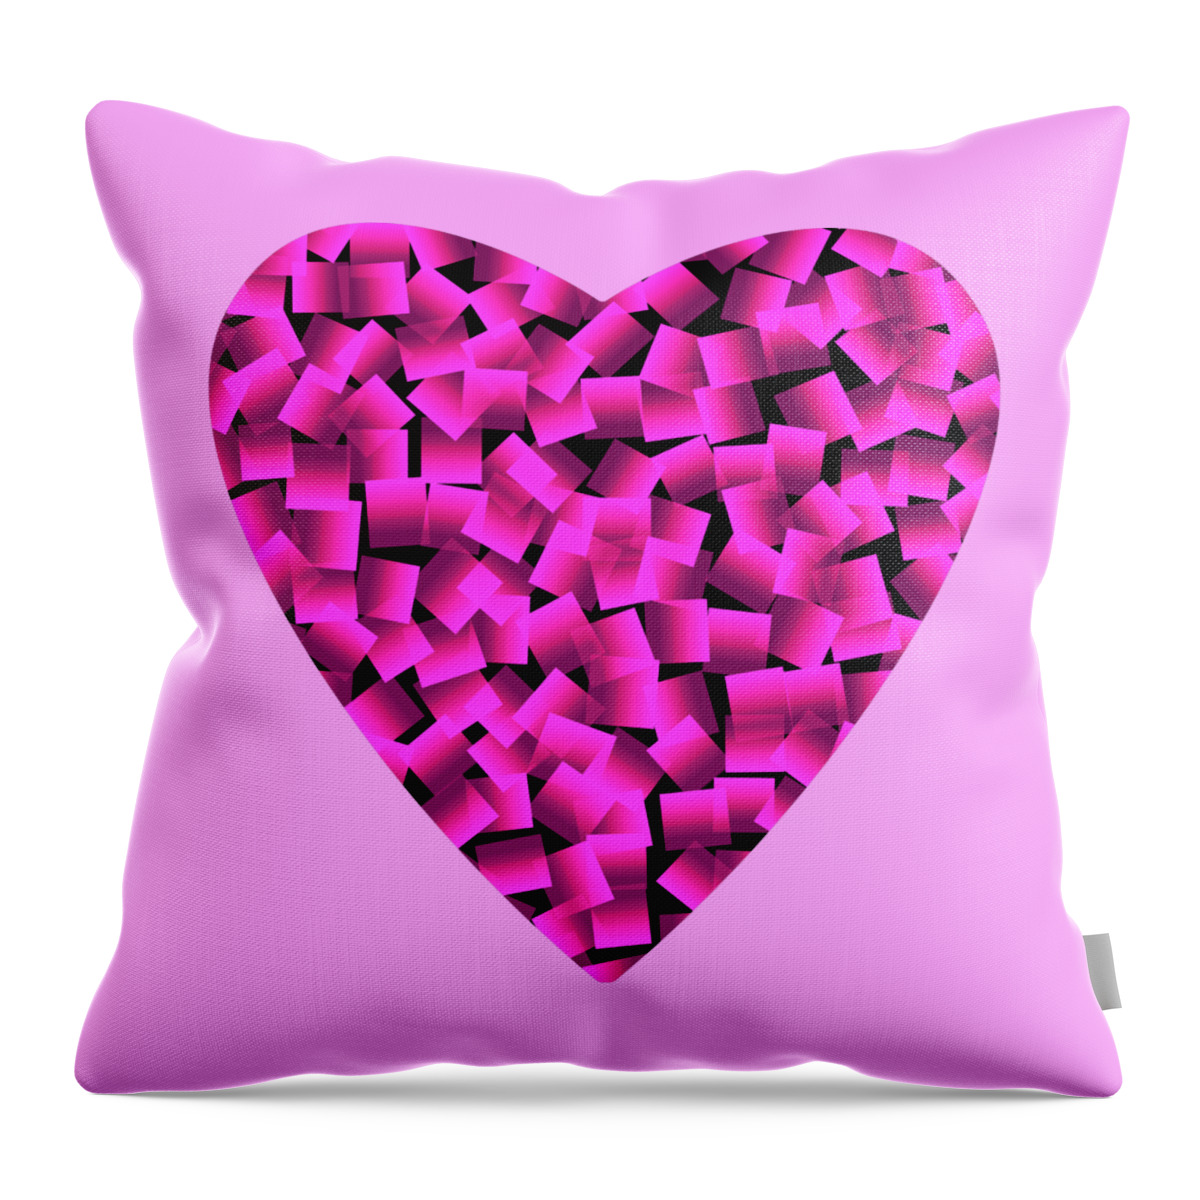 'Pink Heart Abstract' #pillow

kathrin-poersch.pixels.com/featured/pink-…

#pink #PinkFriday #PinkDay #homedecor #homedecorideas #giftideas #MothersDay #MothersDayGift #AYearForArt #BuyIntoArt #InternationalDayOfPink #HomeAndLiving #decoration #decorideas #livingroom #art #onlineshopping #WomensArt